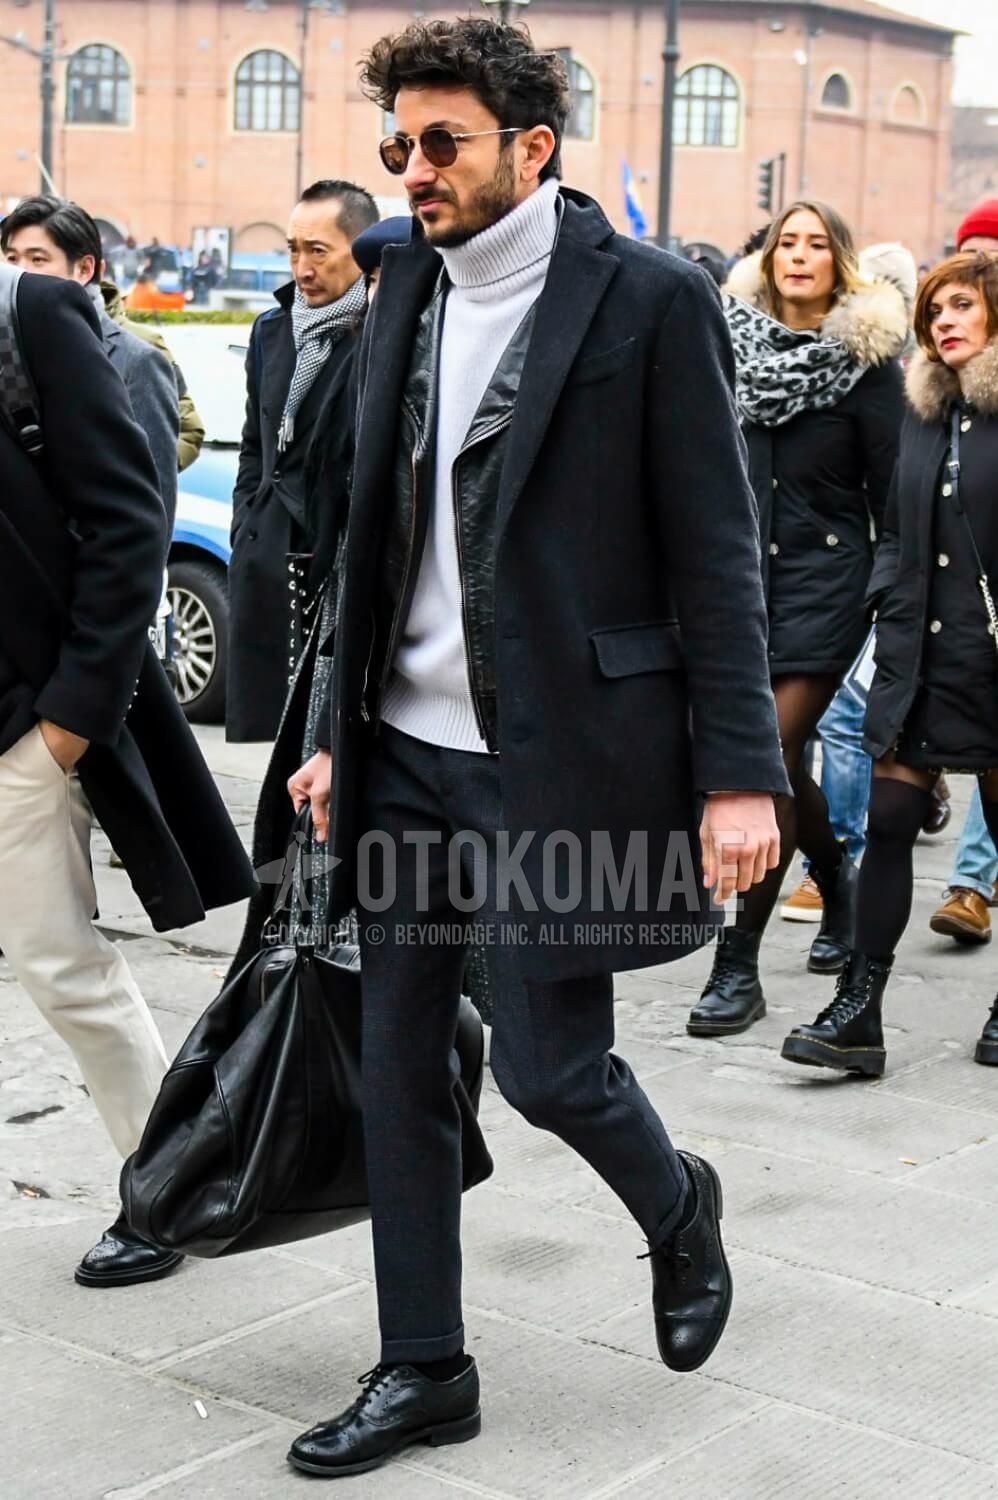 白ニット コーデ メンズ特集 秋冬に実践したい大人の着こなし アイテムを紹介 メンズファッションメディア Otokomae 男前研究所